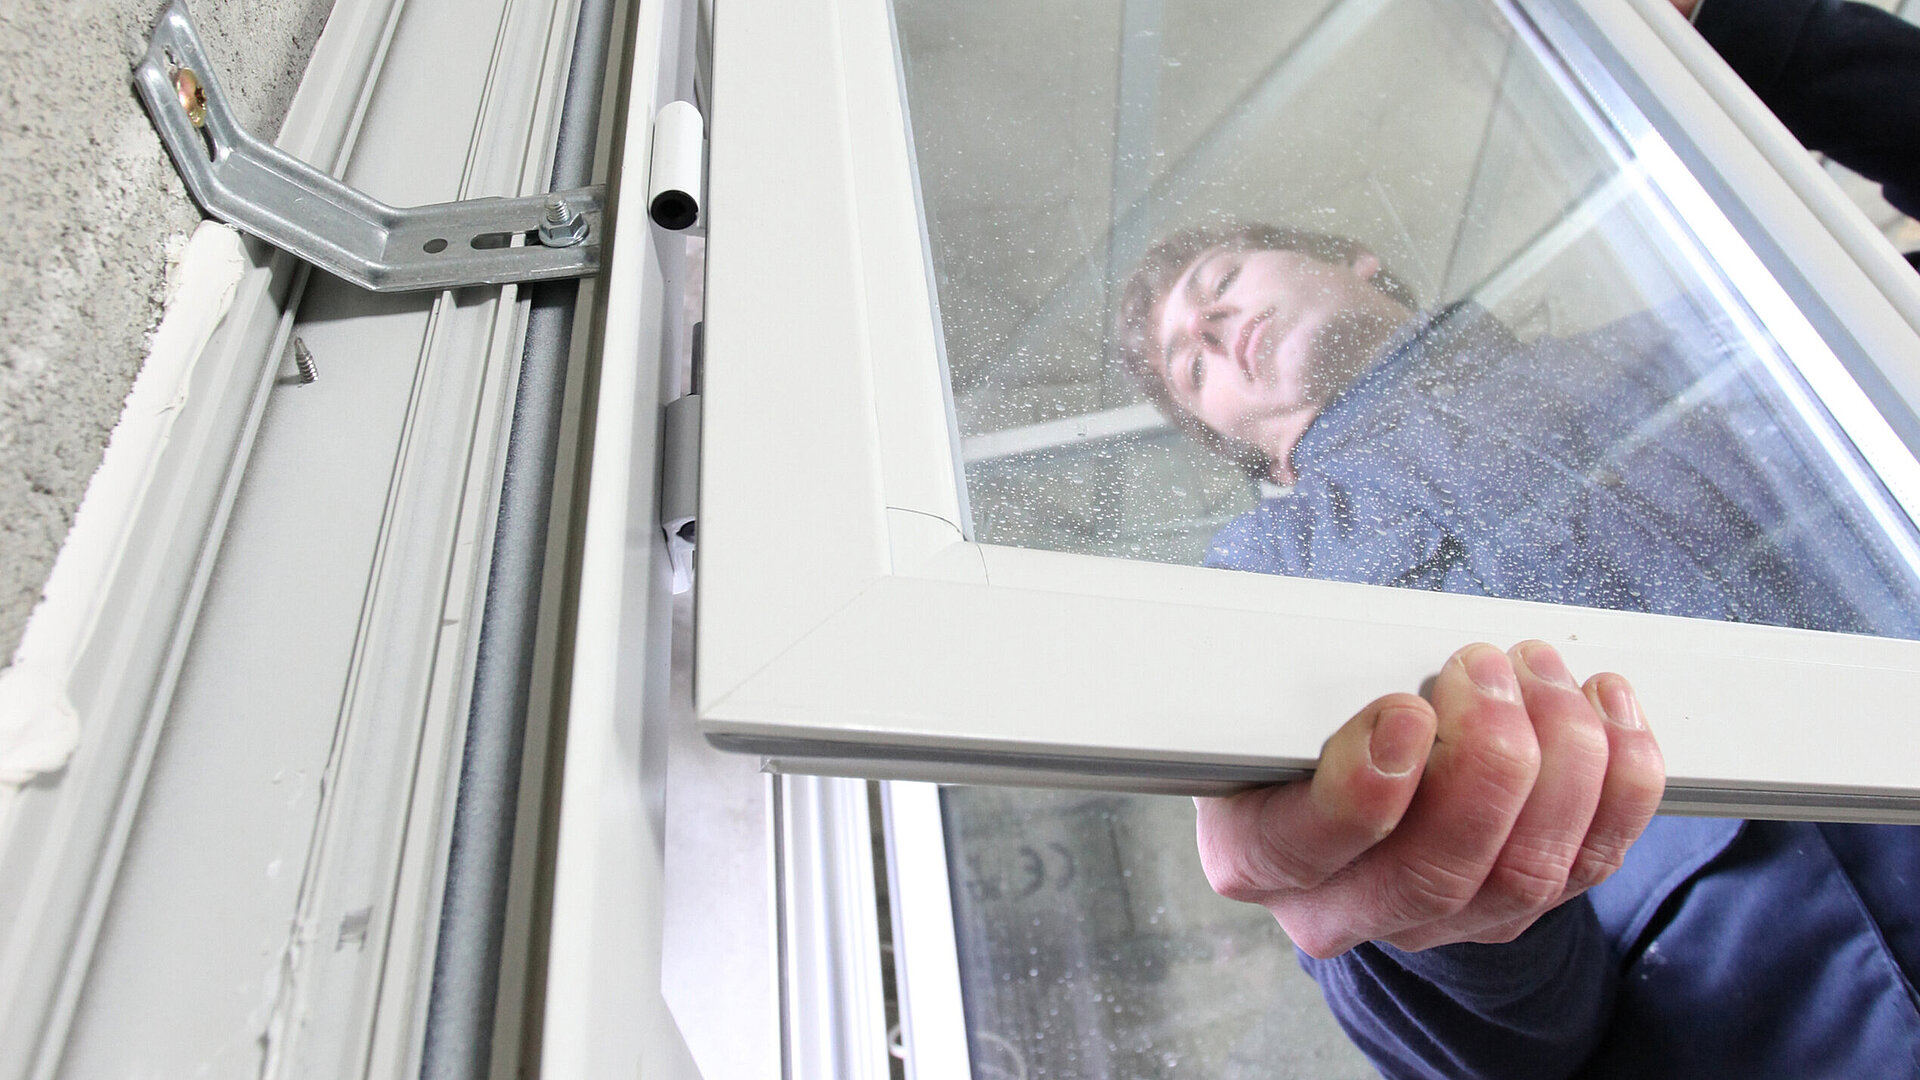 Ein Handwerker montiert vor einer Betonwand einen Flügel an einem Fensterelement. Das Bild steht symbolisch für den Bereich Montage